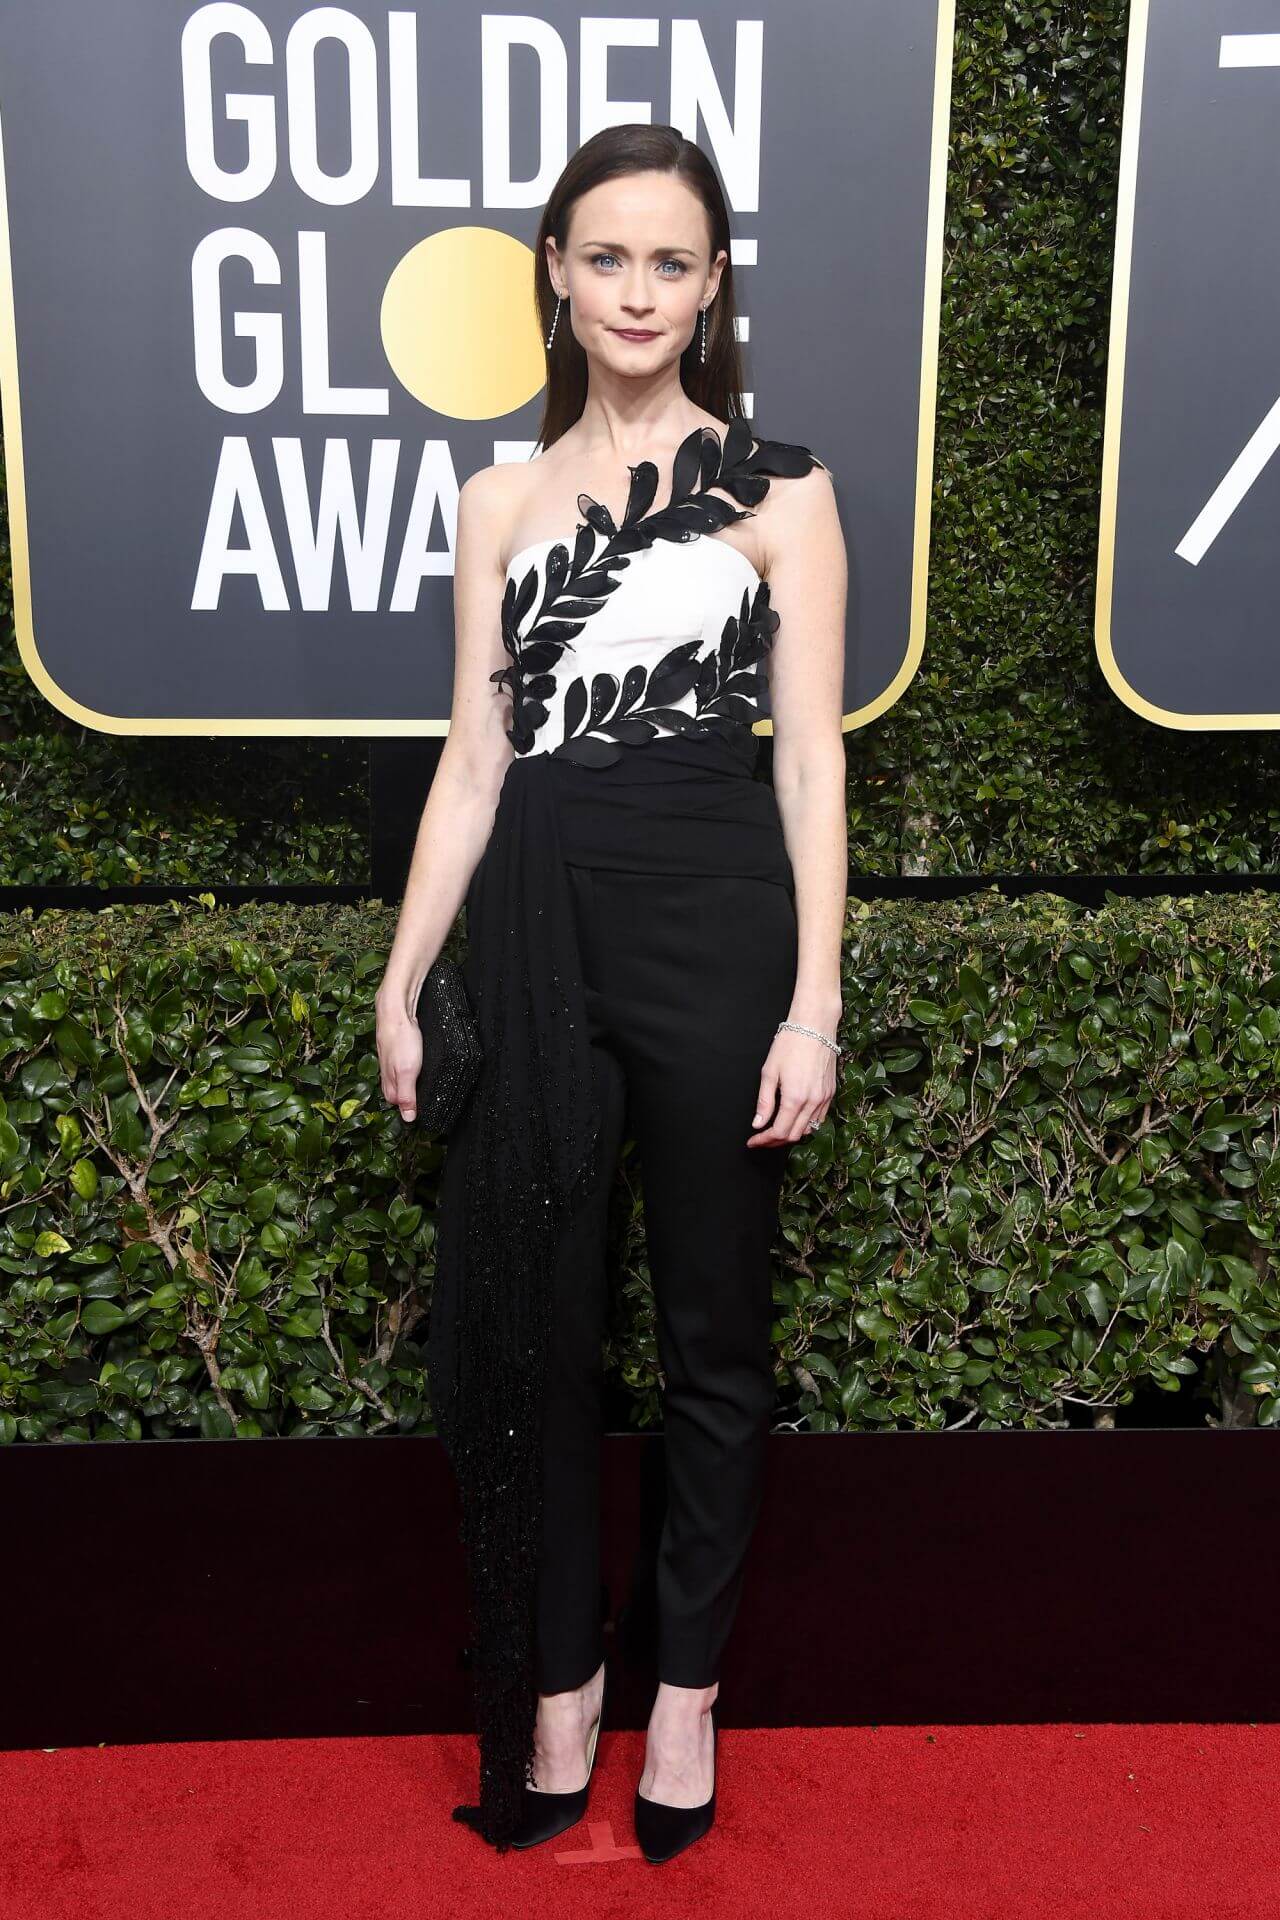 Alexis Bledel – In Black & White Off shoulder Outfit -  Golden Globe Awards